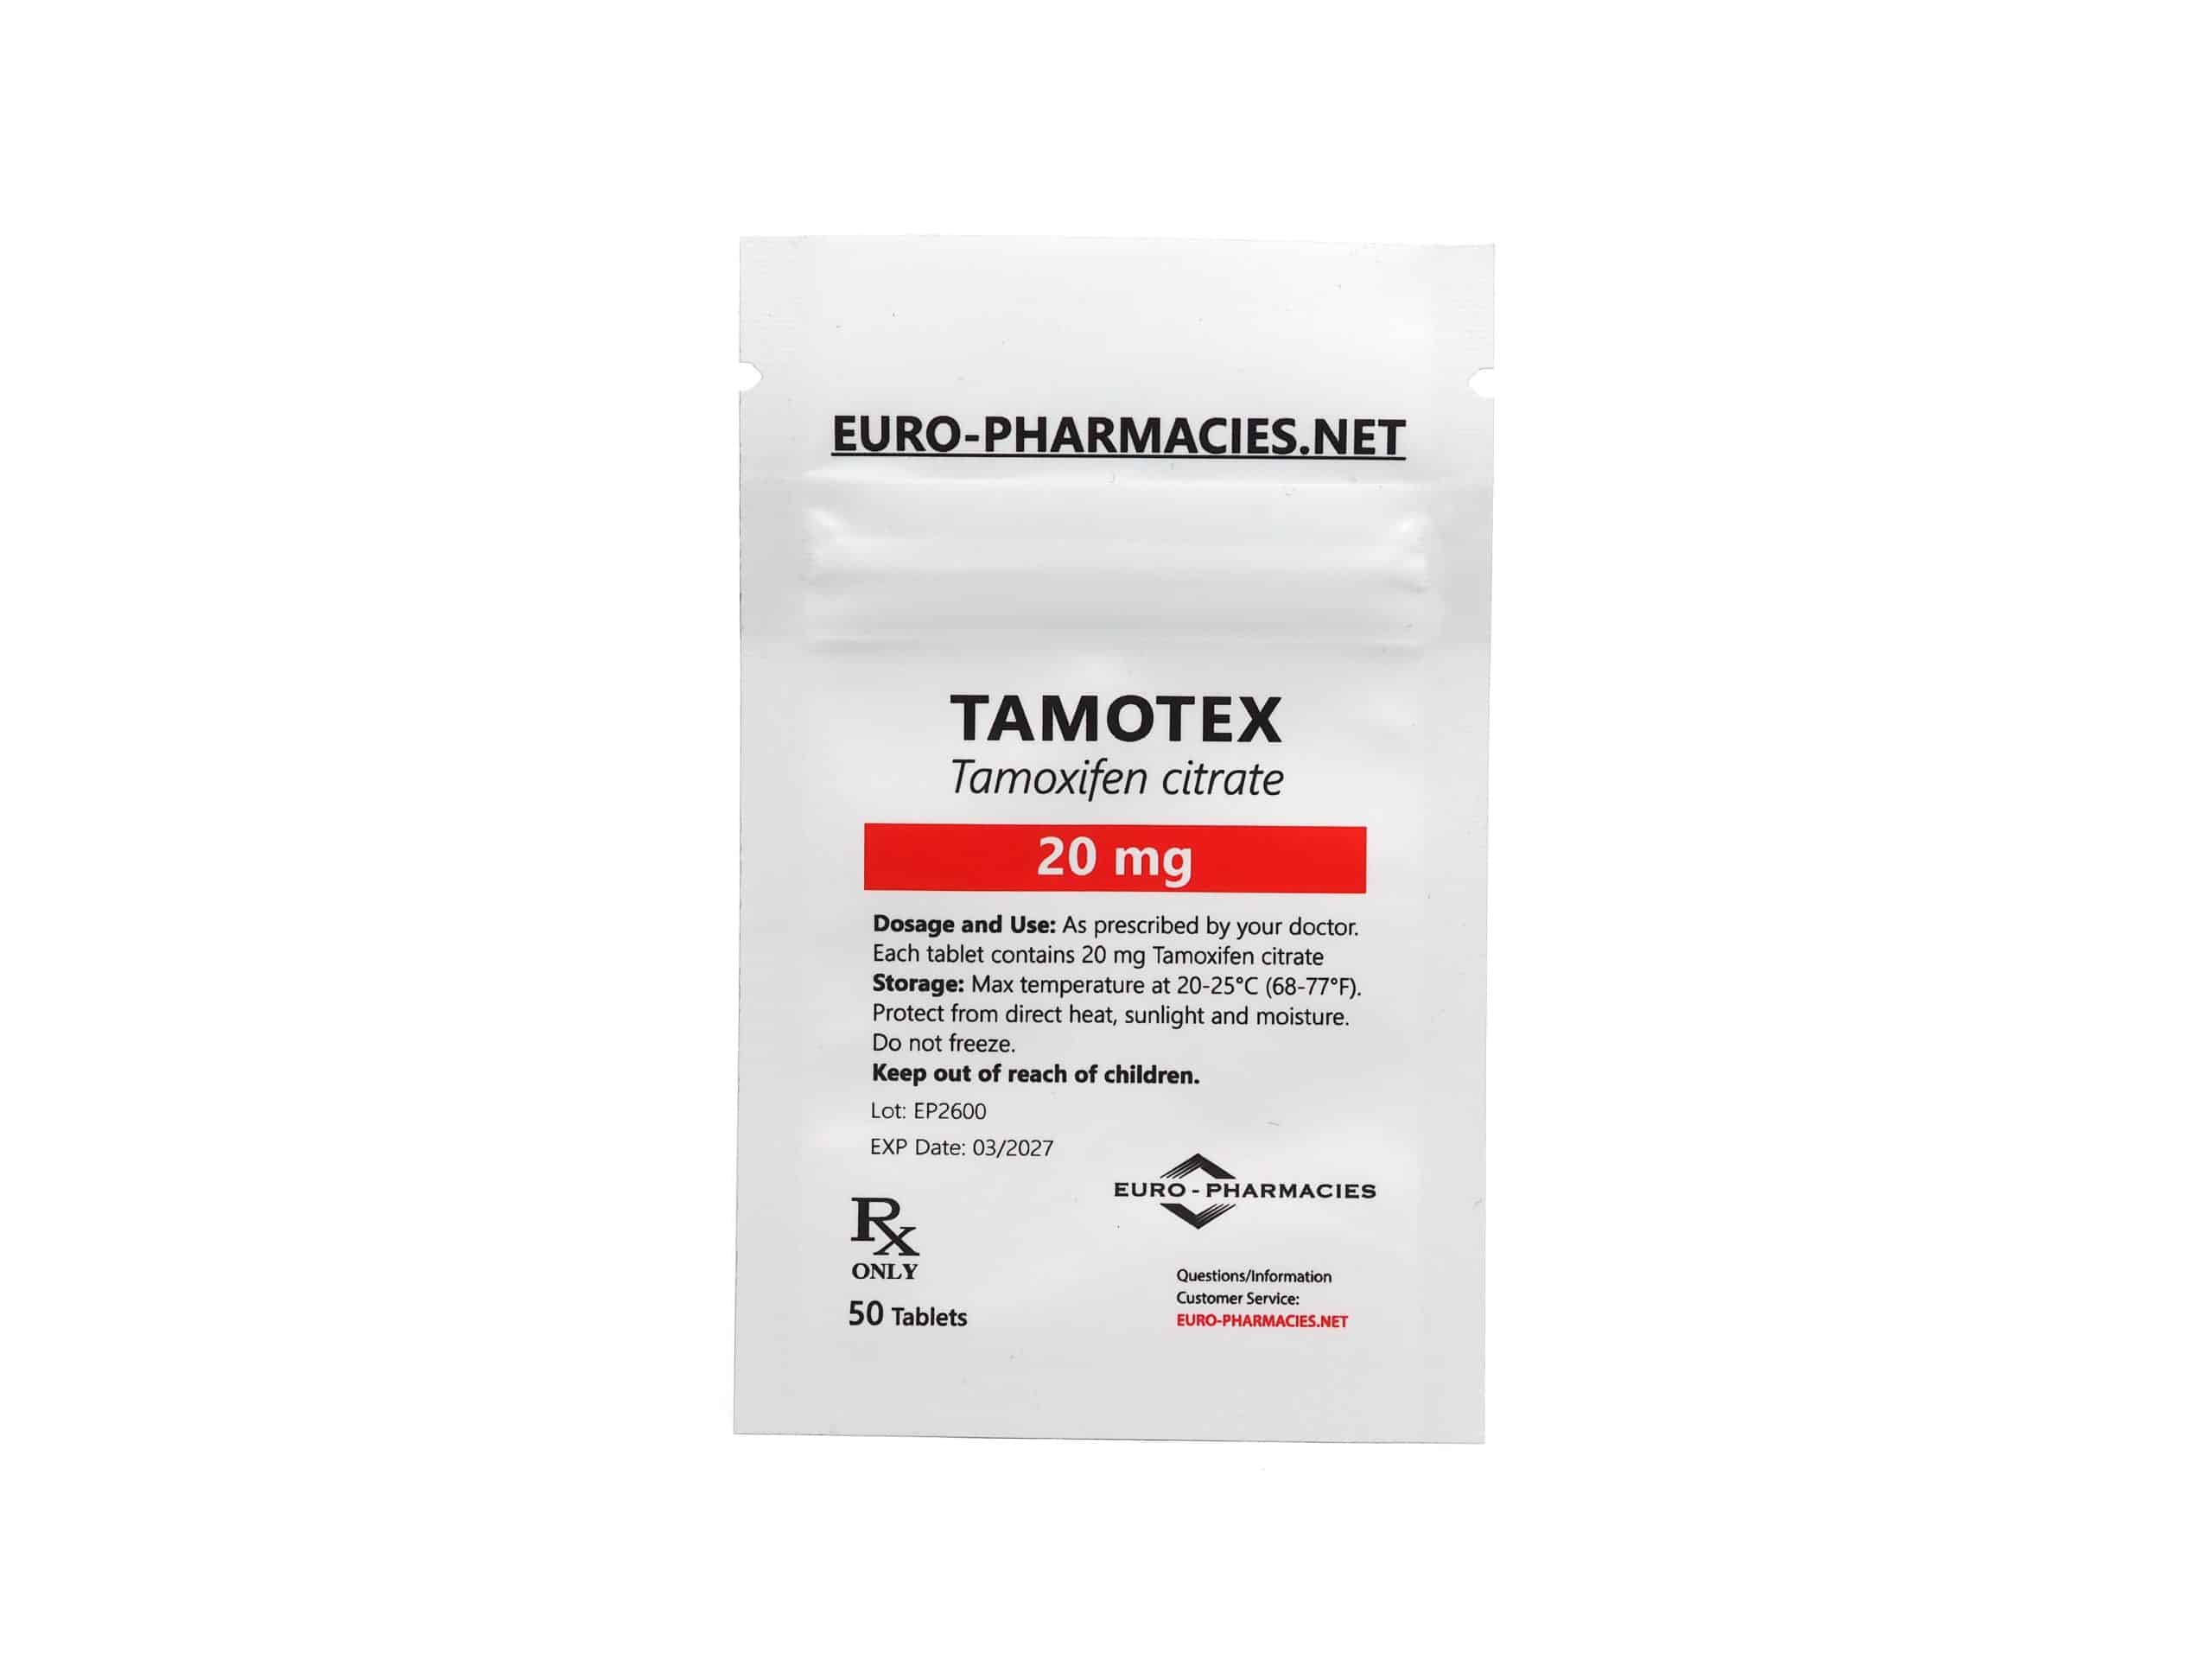 Eurofarmacias Bolsa Tamotex (Tamoxifeno)